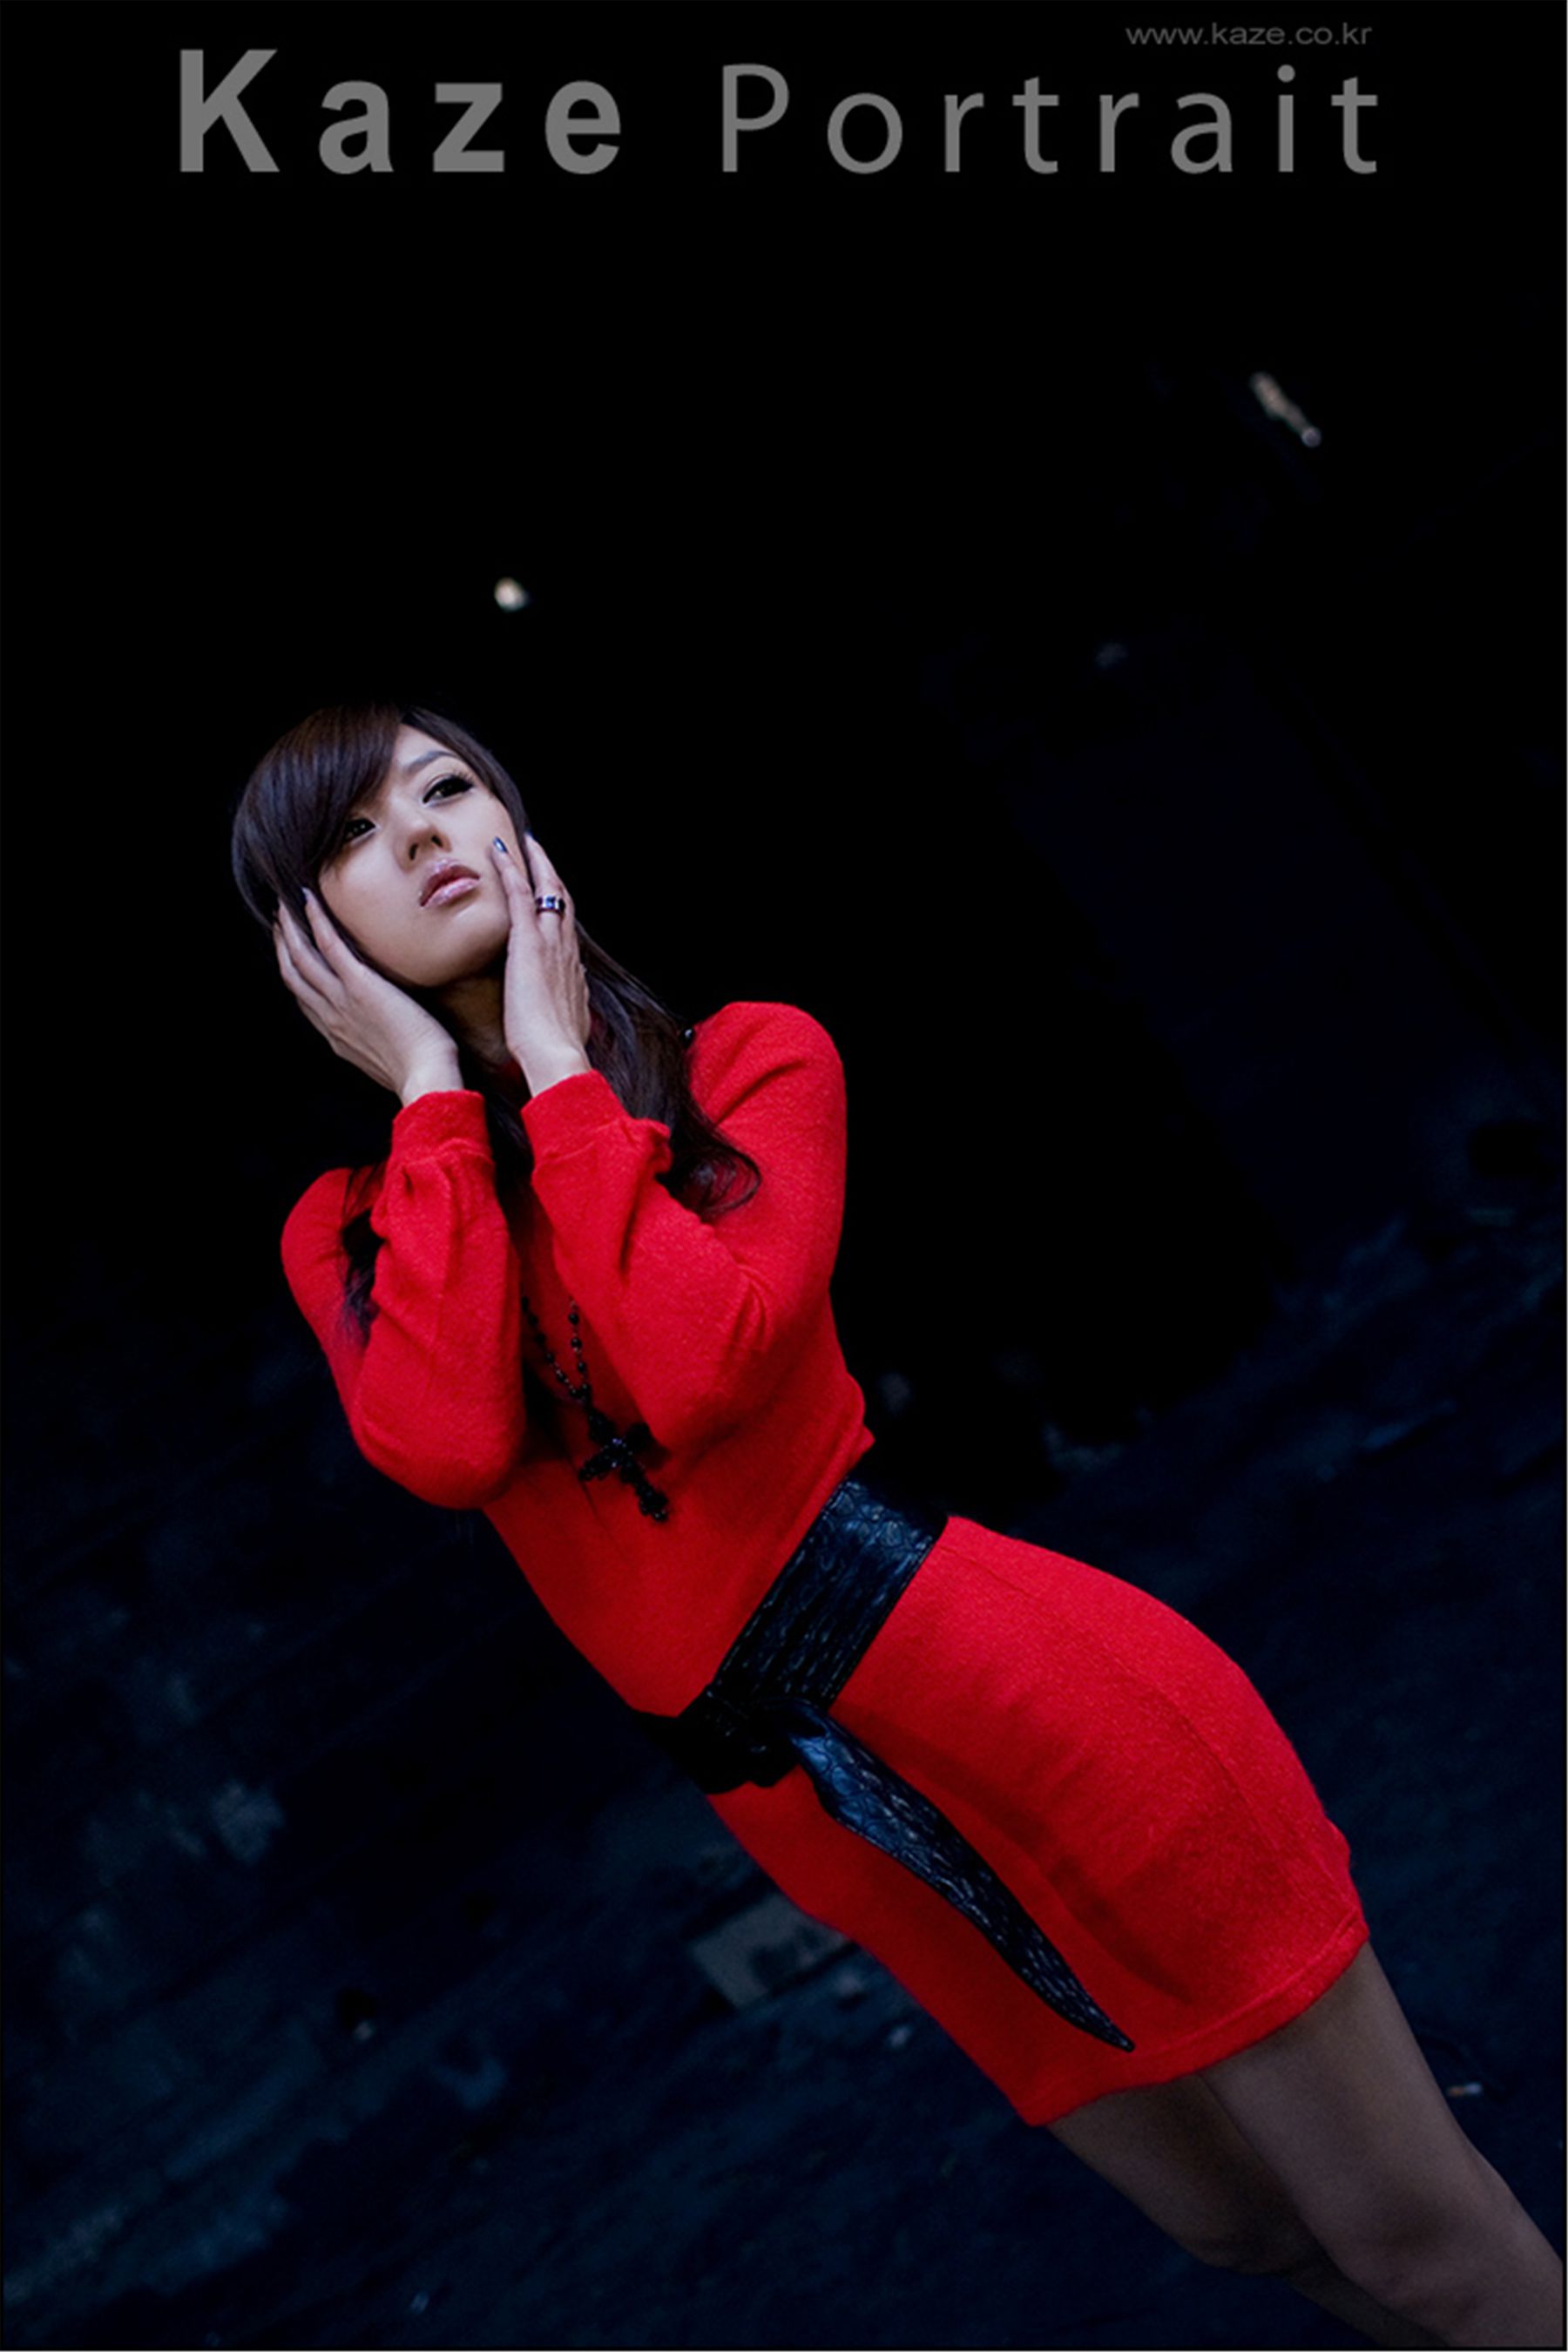 韩国模特黄美姬《废墟里的红衣美女》  第8张